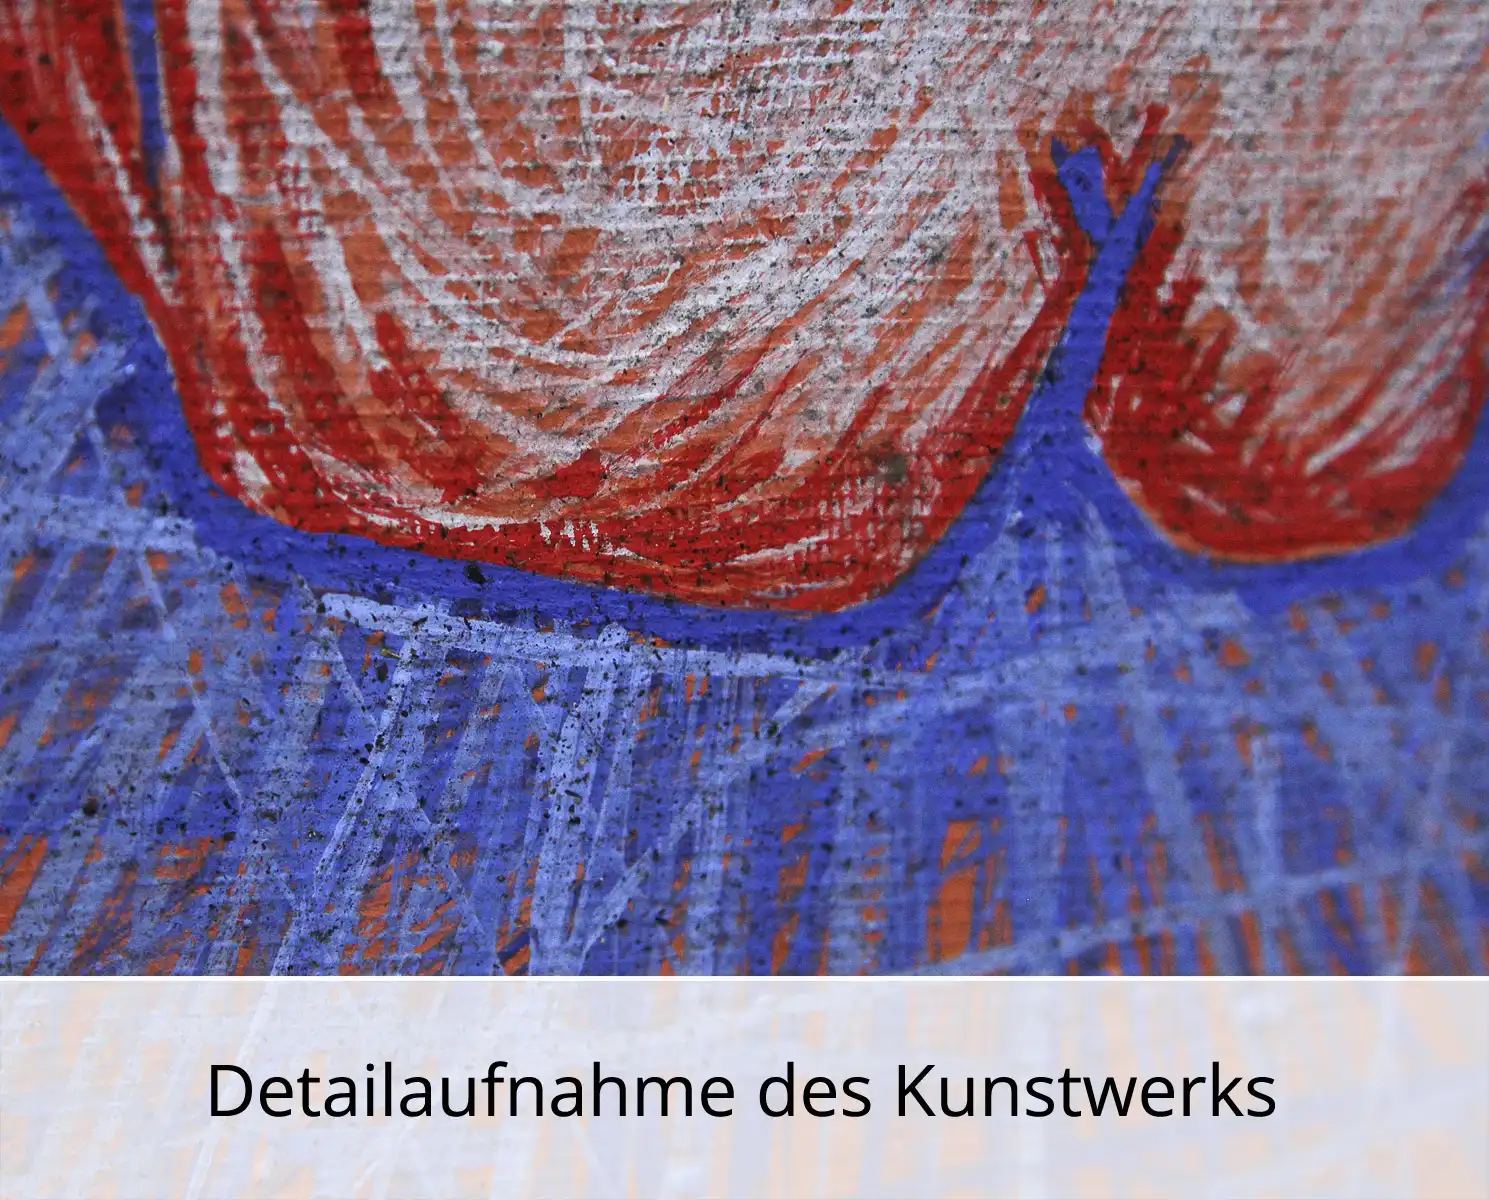 C. Blechschmidt: "Wind im Haar", Original/Unikat, zeitgenössisches Ölgemälde